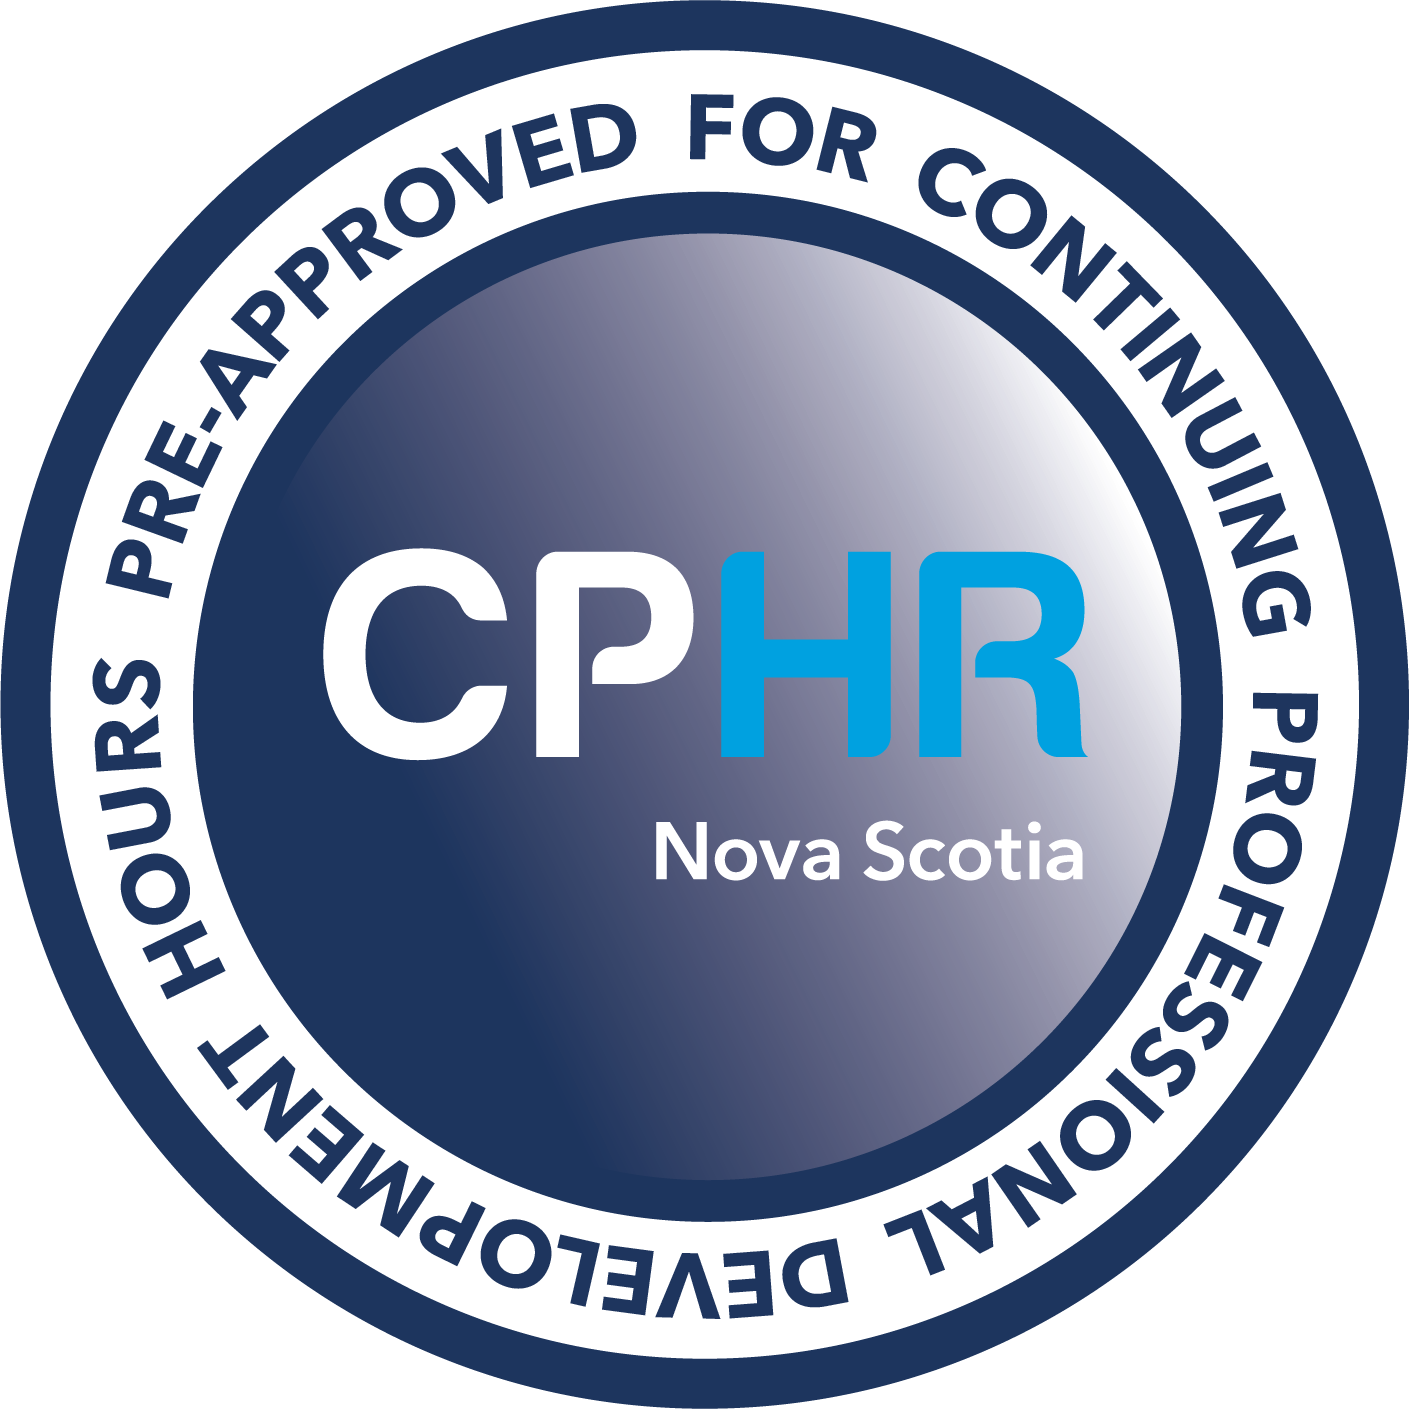 CPD CPHR Nova Scotia